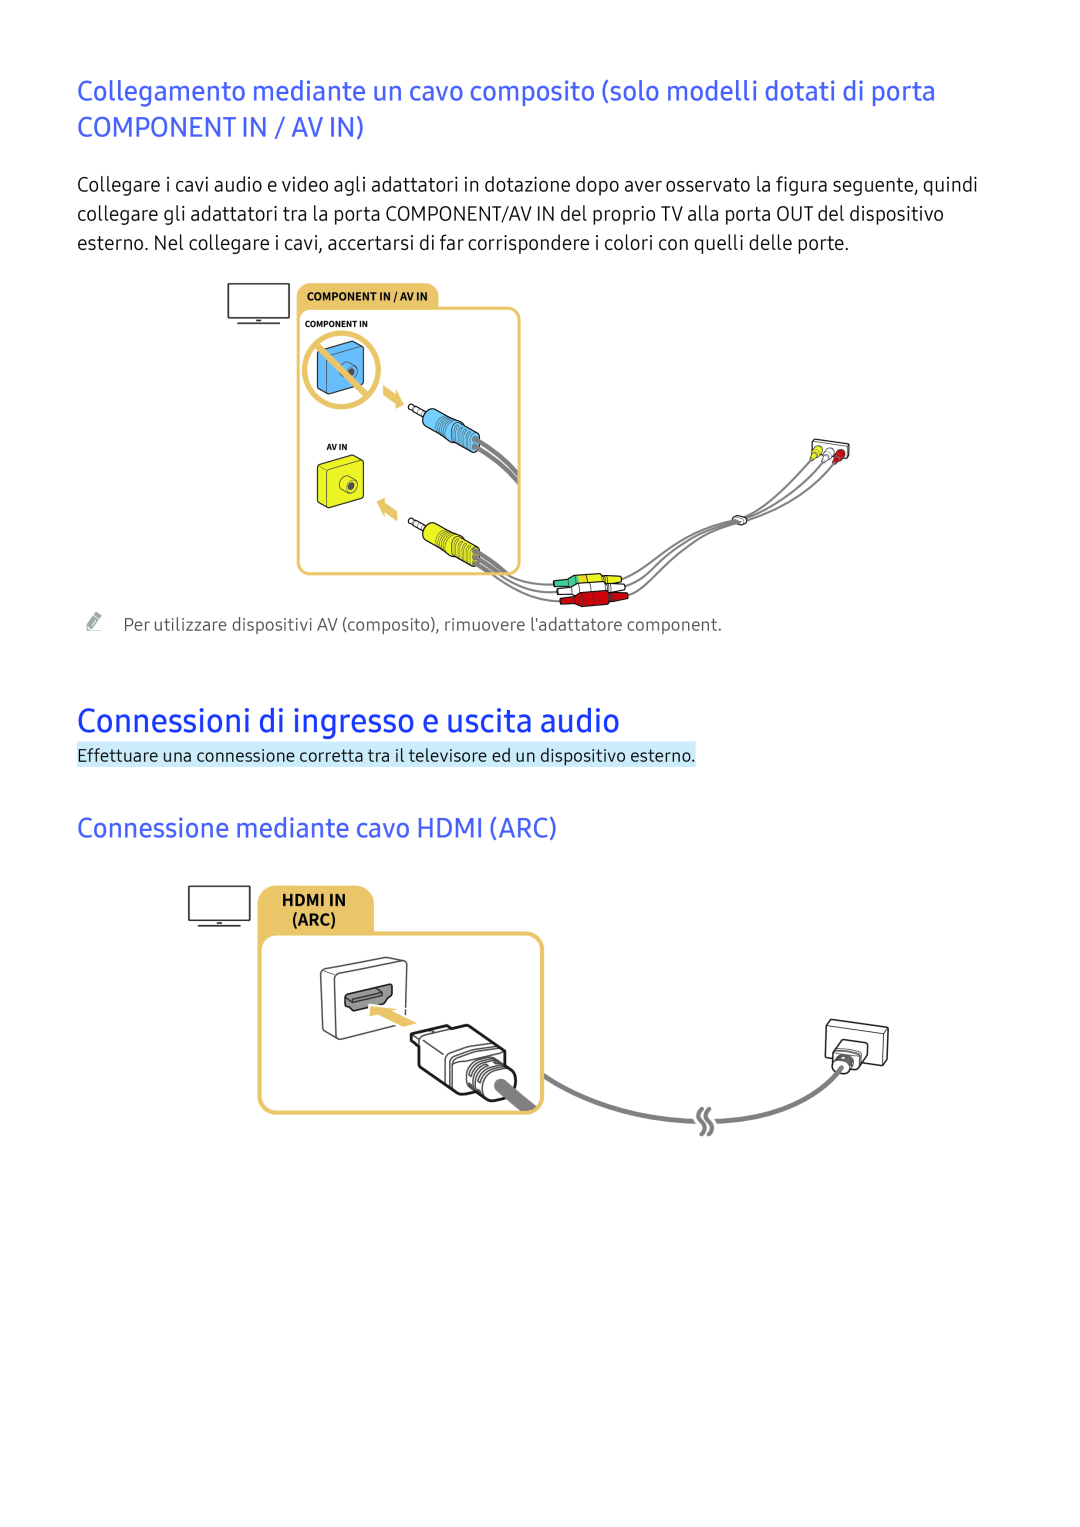 Samsung UE55K6370SSXXH Connessioni di ingresso e uscita audio, Connessione mediante cavo HDMI ARC, Component In / Av In 